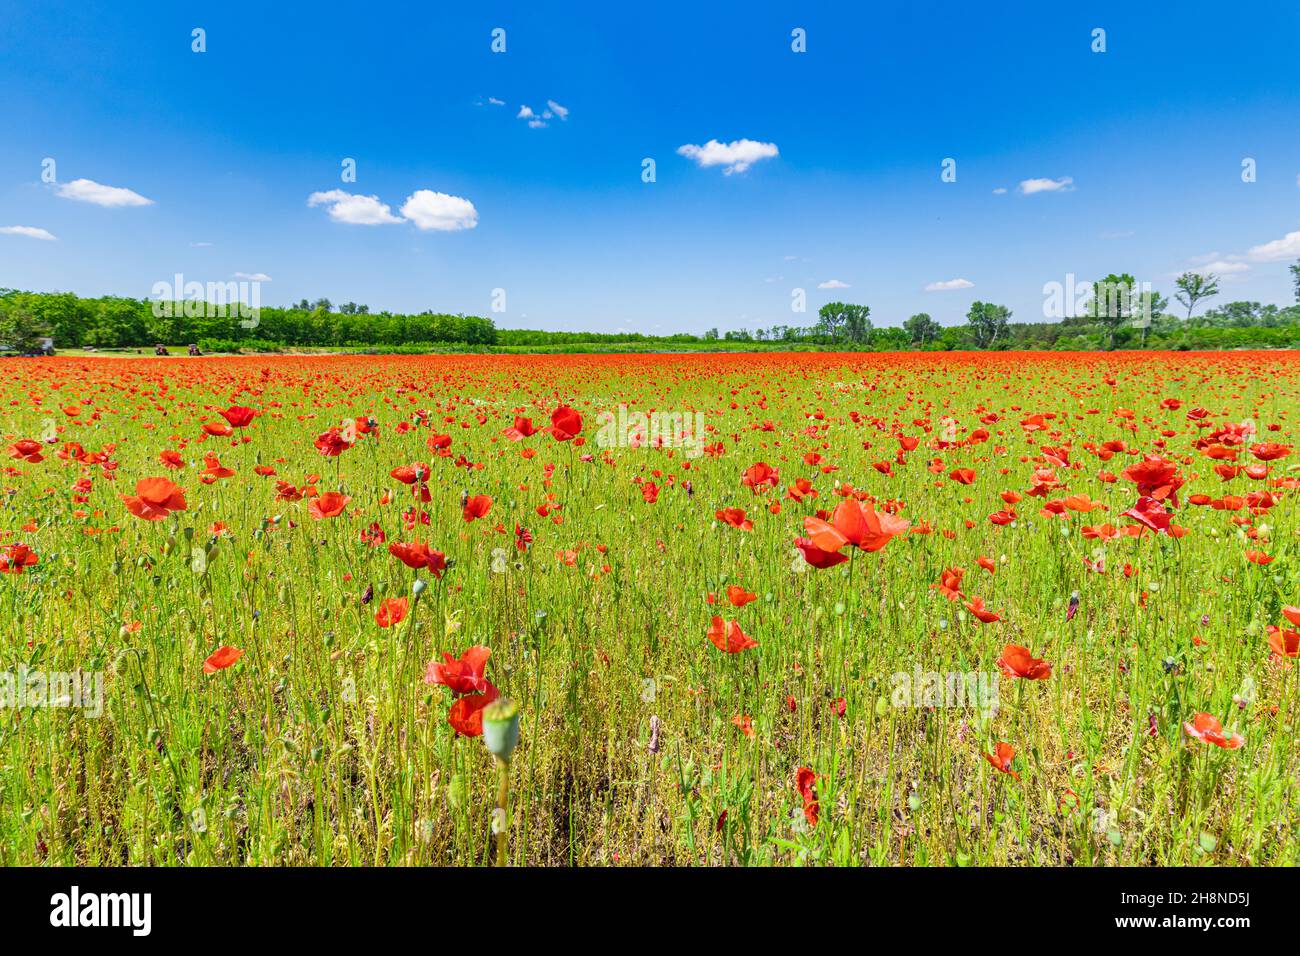 Panorama du champ de pavot dans la campagne estivale. Lumière du soleil florale rouge, ciel bleu nuageux, champ de forêt avec fleurs de prairie. Nature panoramique, amour idyllique Banque D'Images